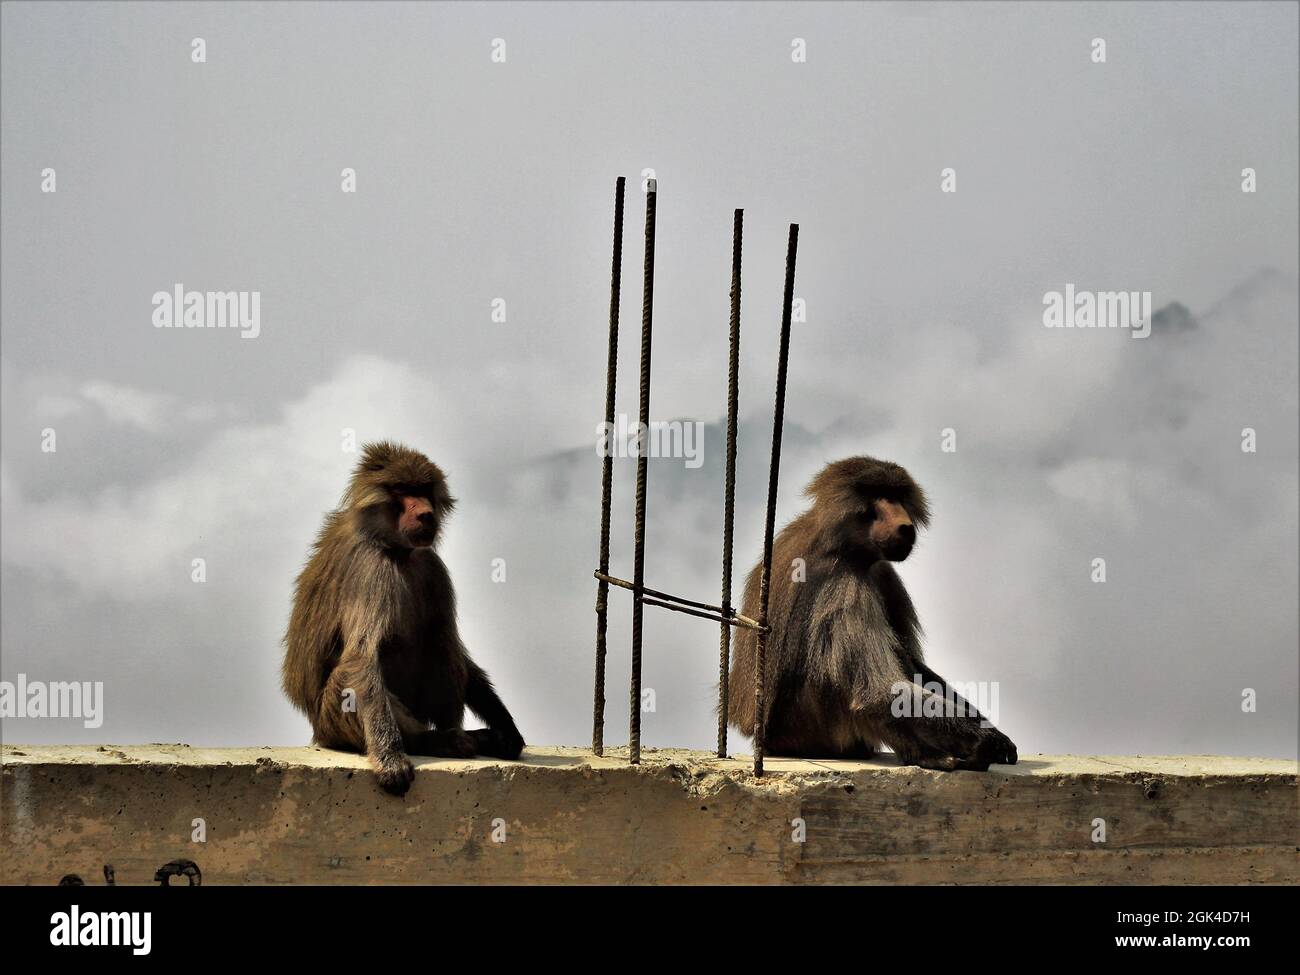 Traurige wahre Geschichte, diese beiden Affen waren so frei, sie waren direkt vor einem Zoo in Raghadan, wo ein Affe "im Gefängnis" war. So sah ich es. Stockfoto